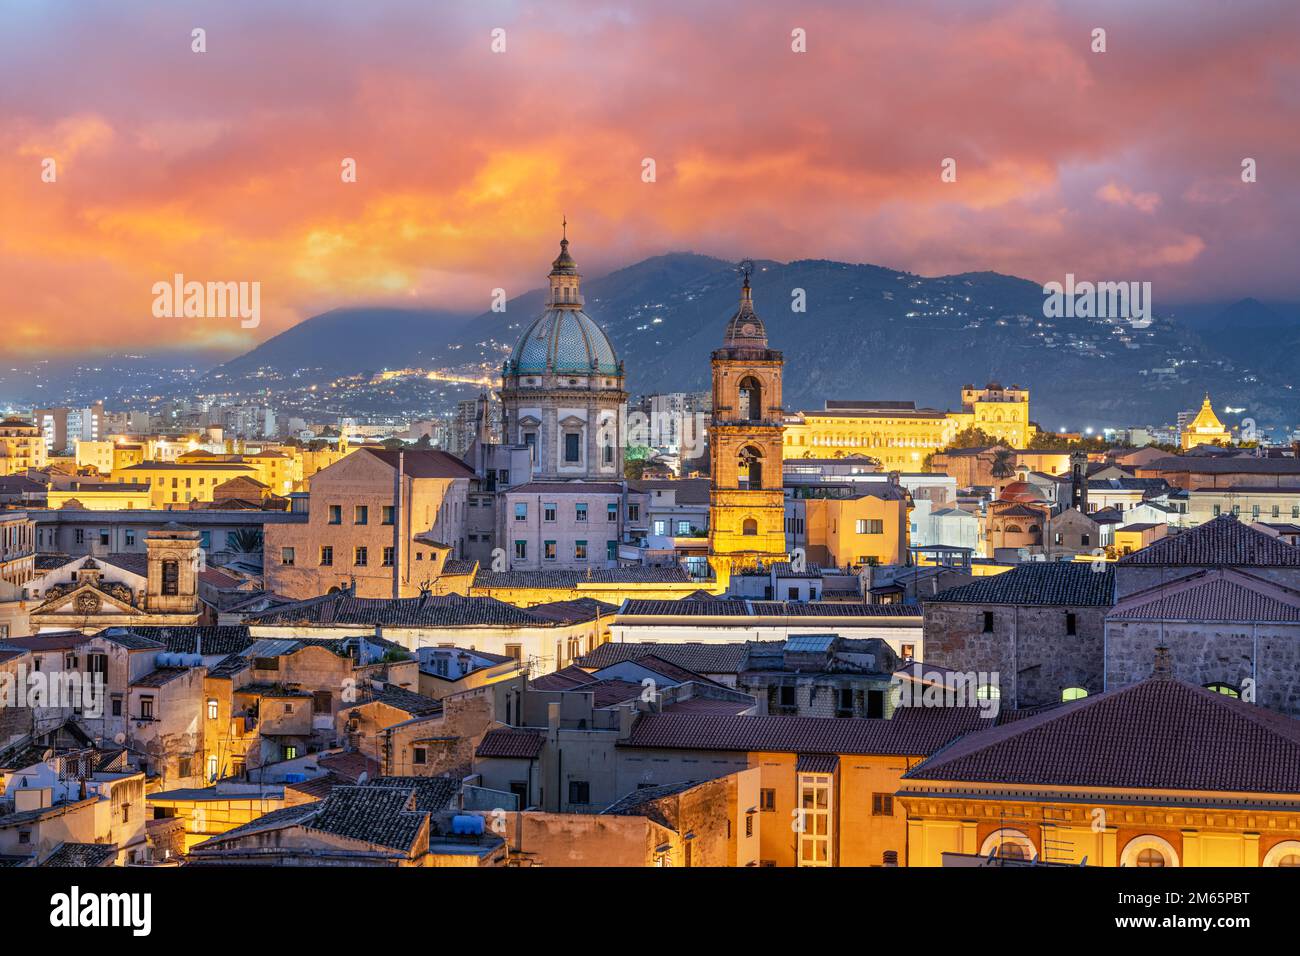 Palermo, el horizonte de la ciudad de Sicilia con torres históricas al anochecer. Foto de stock